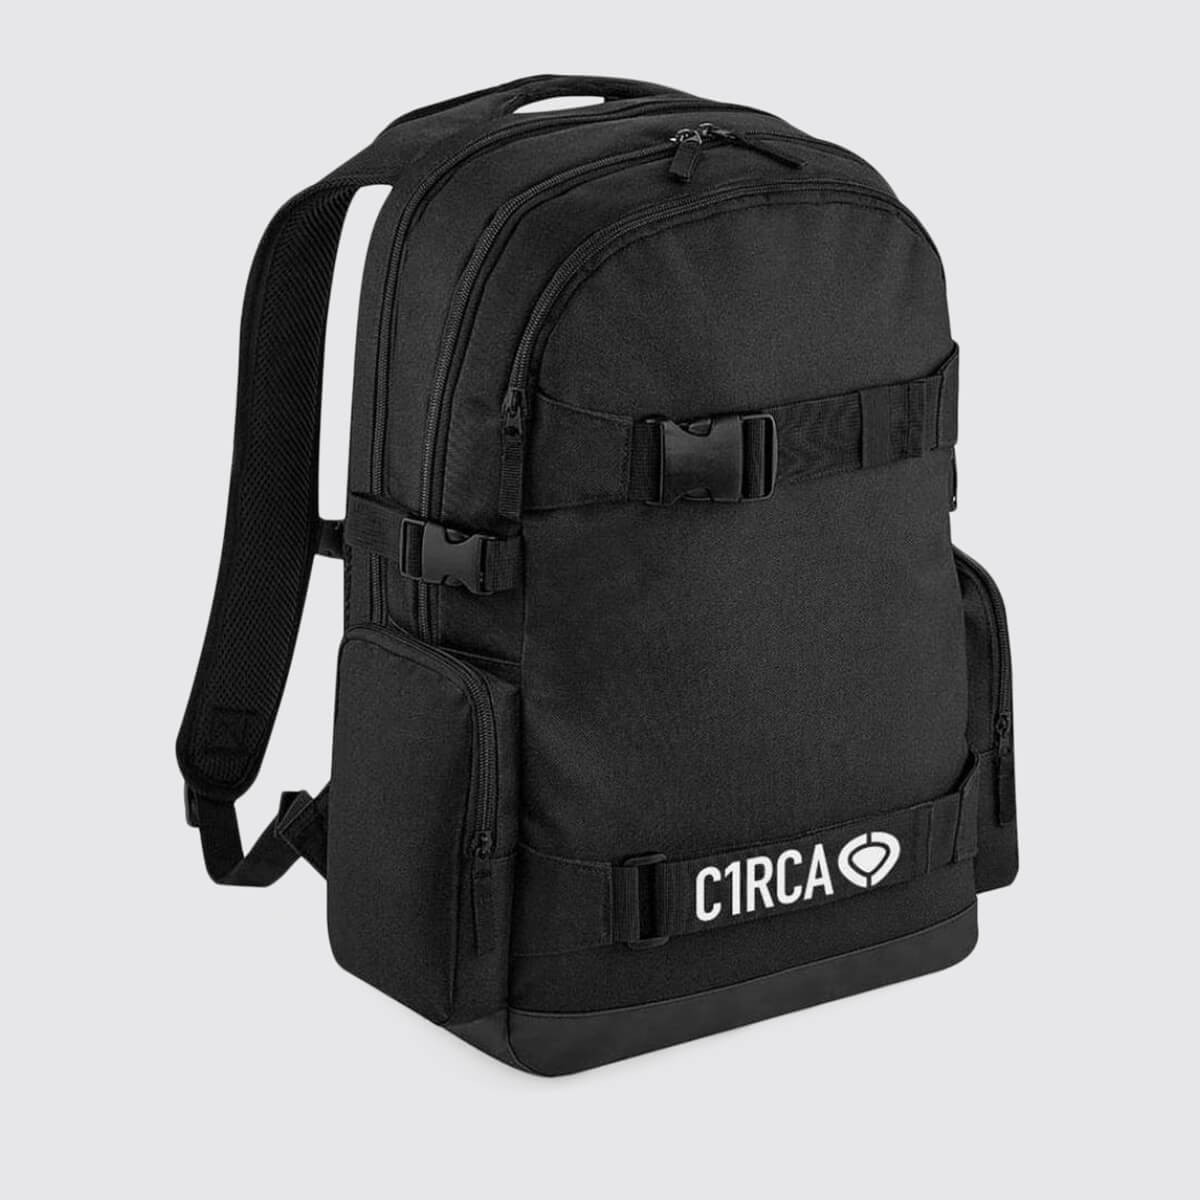 Рюкзак C1rca DIN ICON black, 36х46х16 см